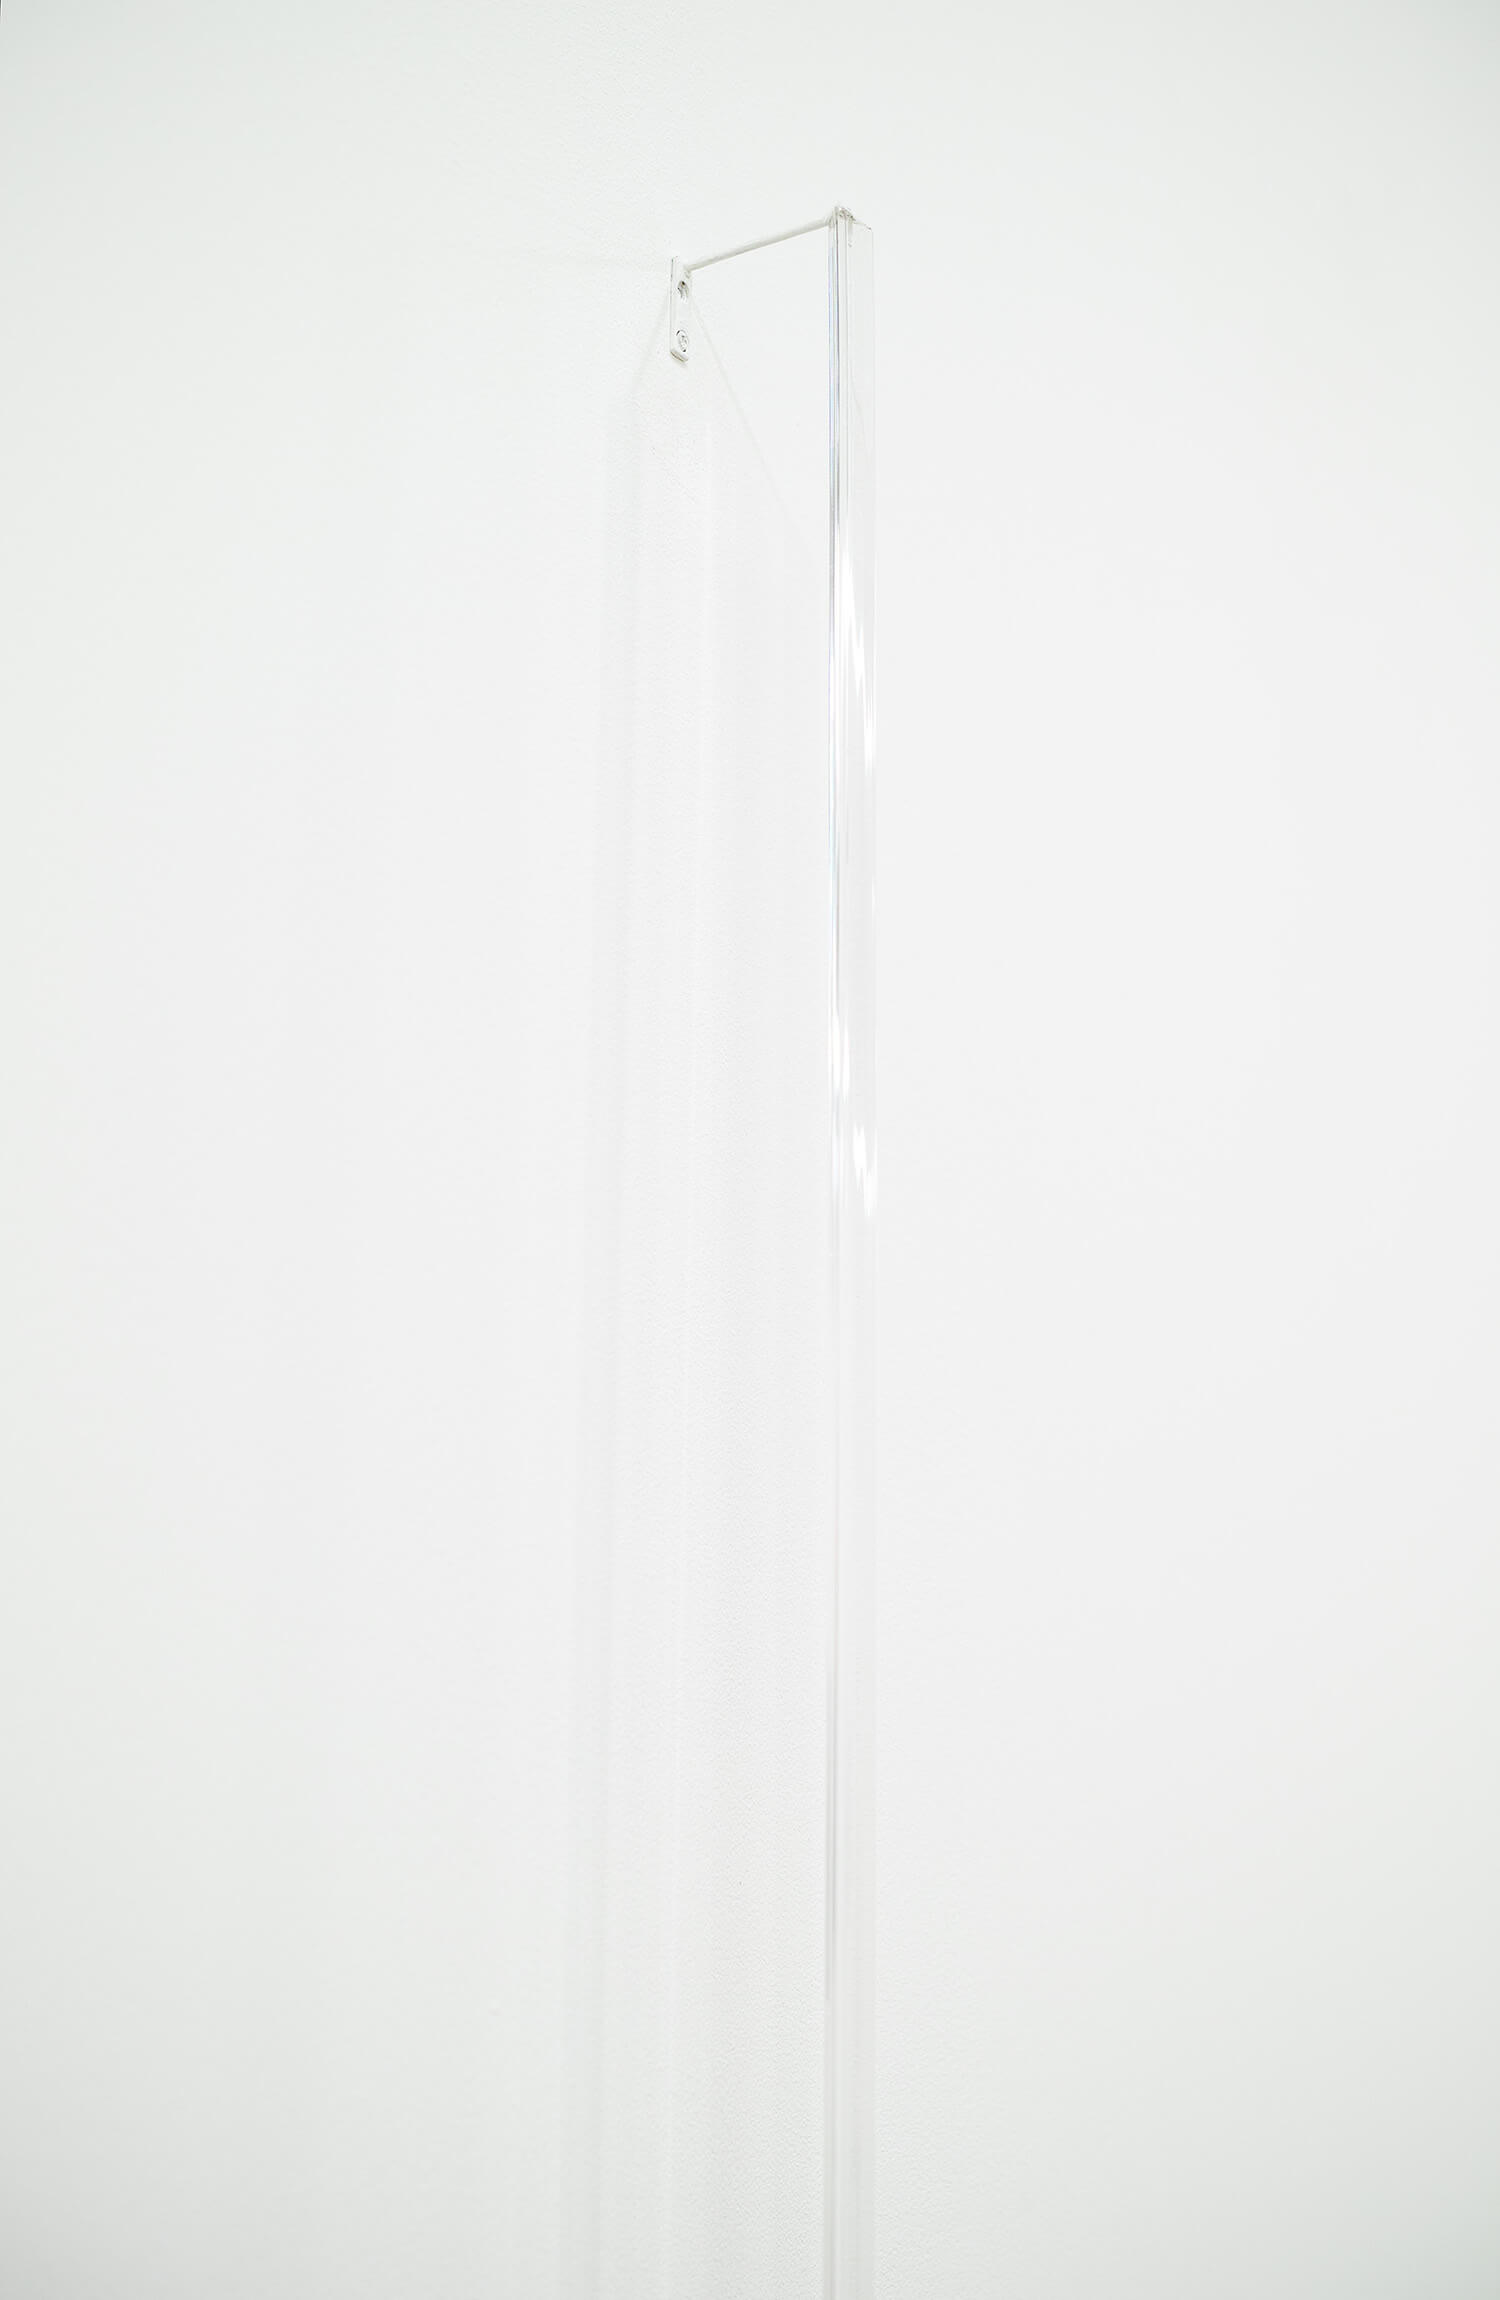 池田啓子　untitled 140328_2　透明アクリル棒（三角柱）、真鍮　7 x 14 x 900 mm　2014